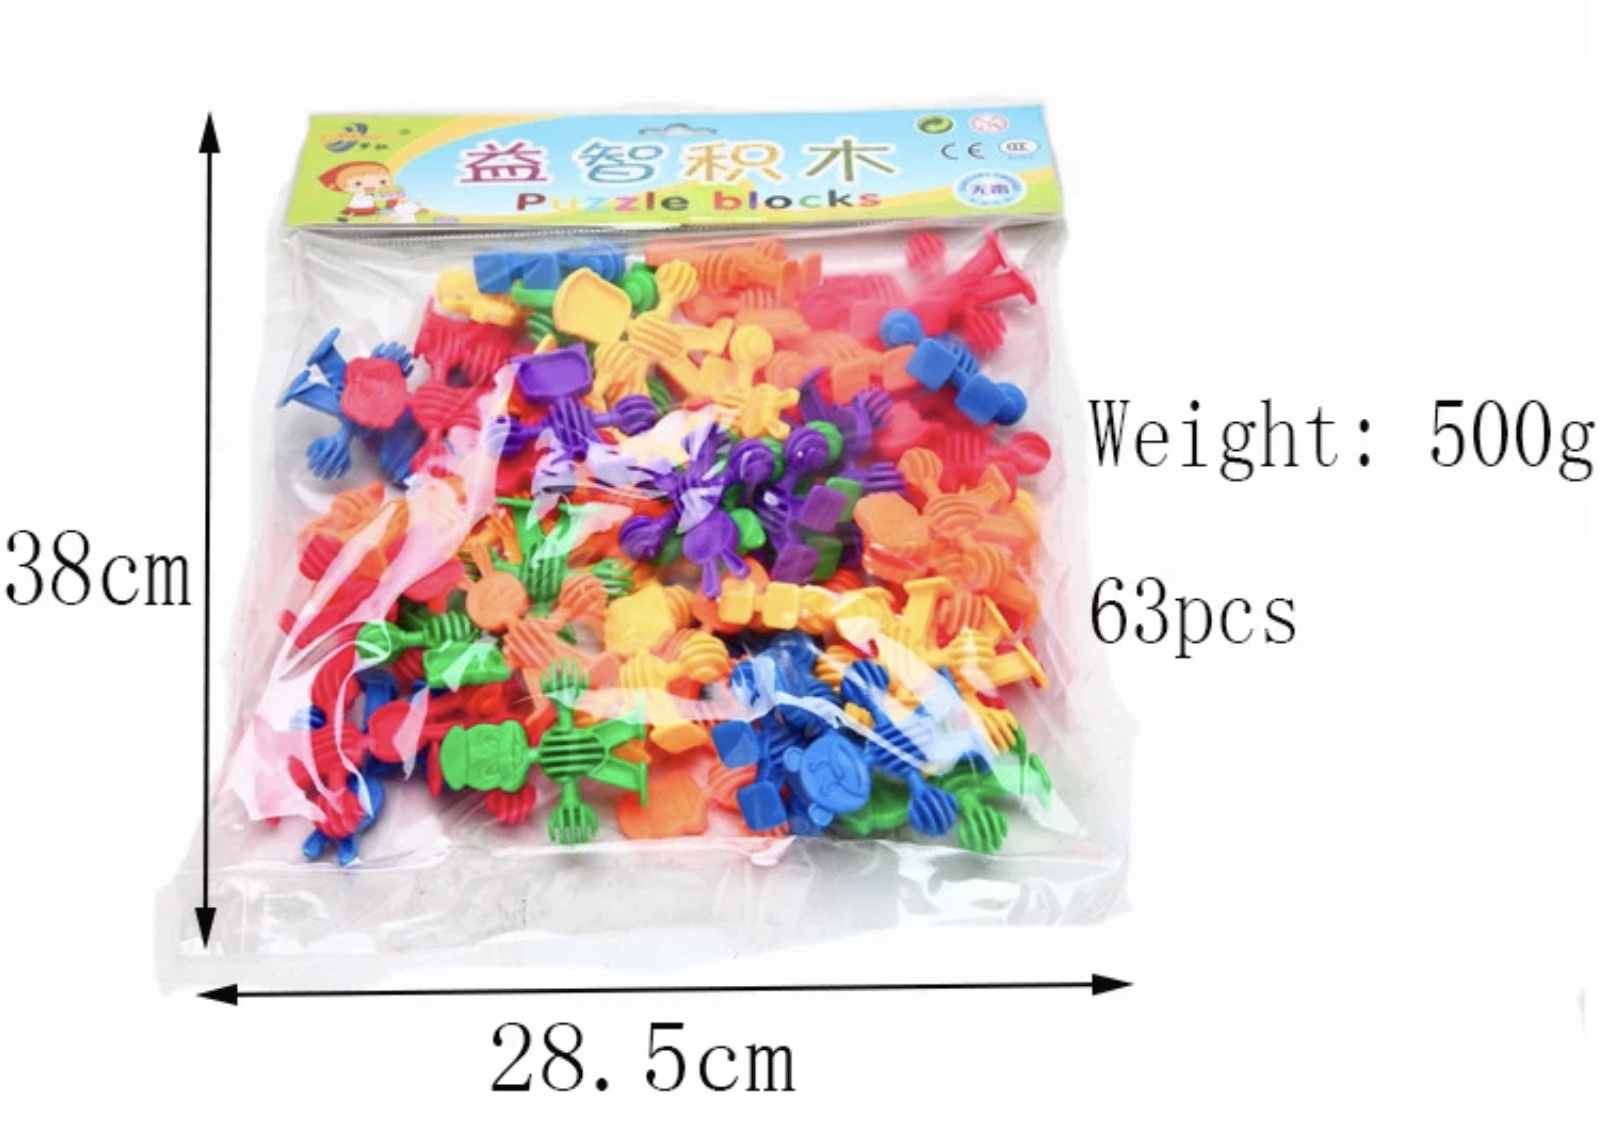 Construcții din plastic cu forme de omuleț pentru copiii de vârstă trei ani + 1 joc ideal pentru stimularea activității mintale Produsul este non toxic